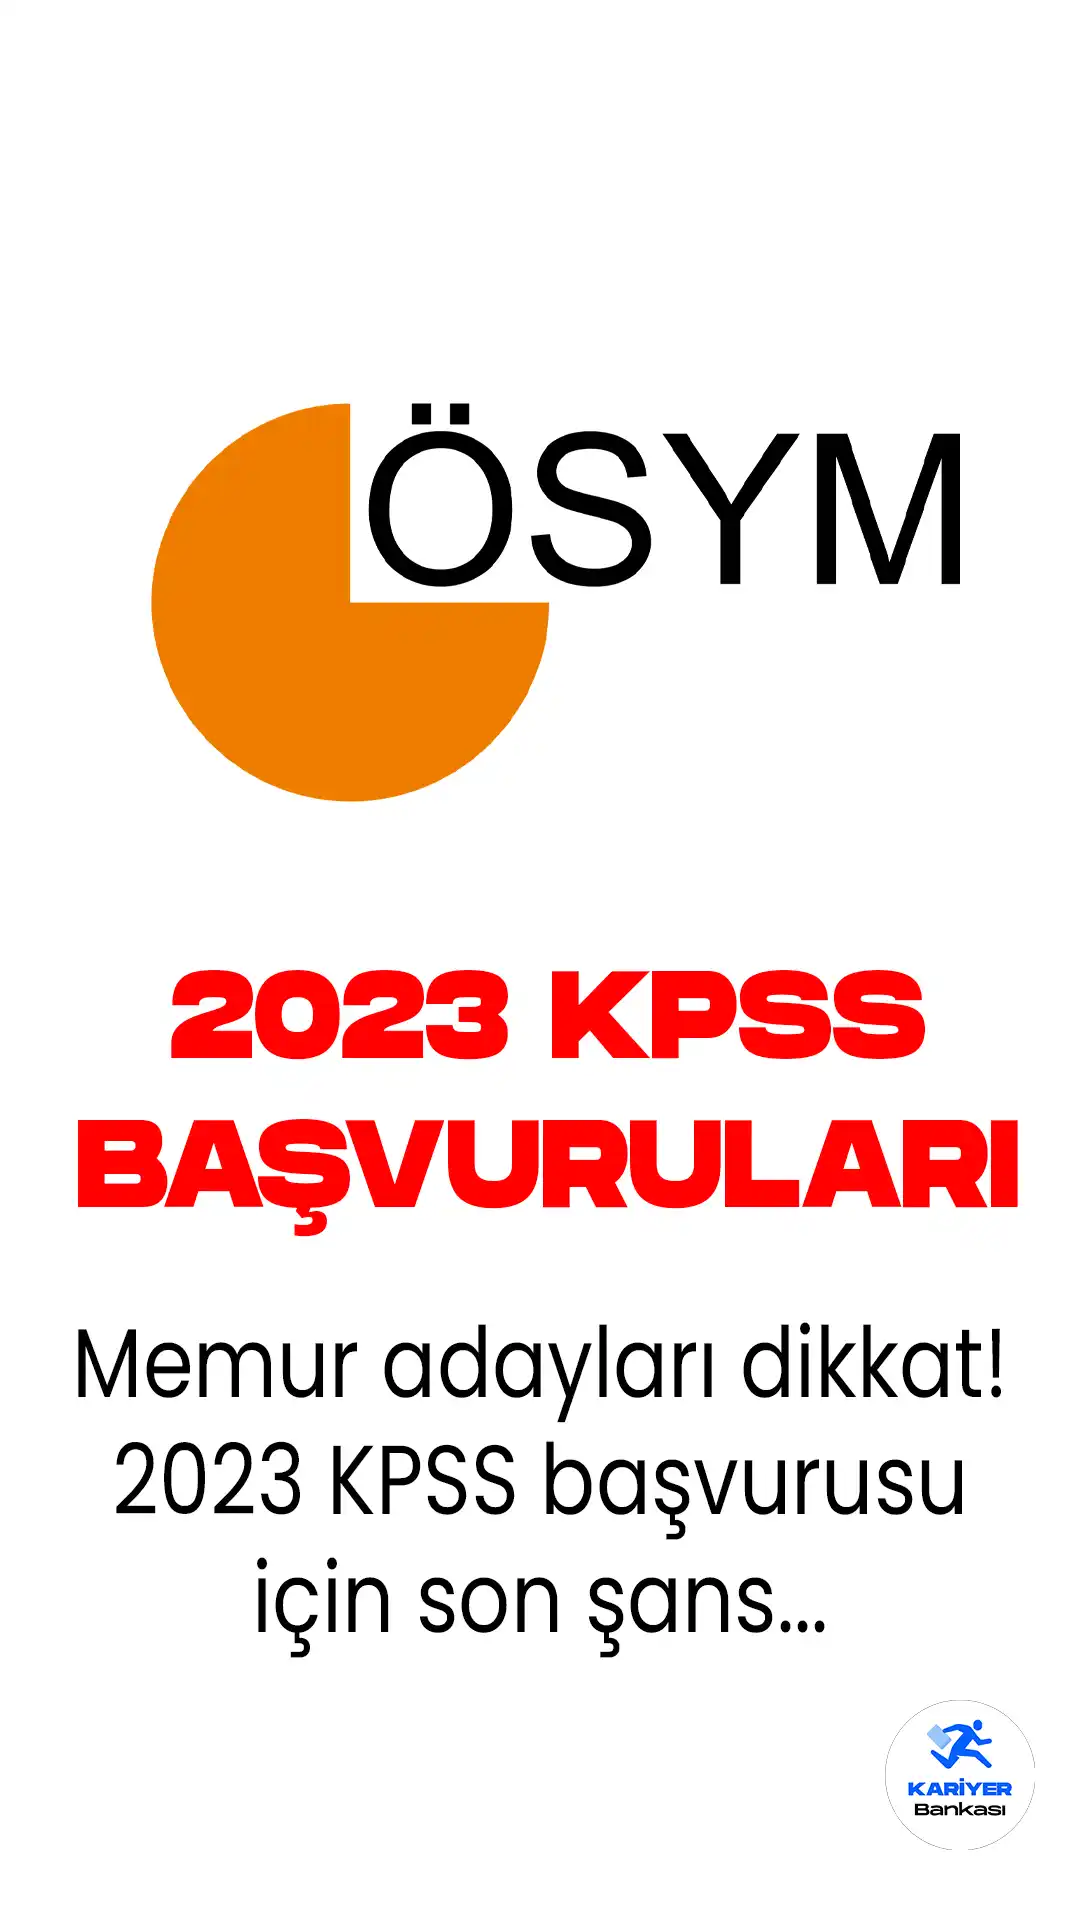 2023 KPSS için geç başvuru işlemleri başladı. Geç başvurular, 7 Haziran 2023 saat 23.59'a kadar ÖSYM'nin ais.osym.gov.tr adresinden online yapılacak.